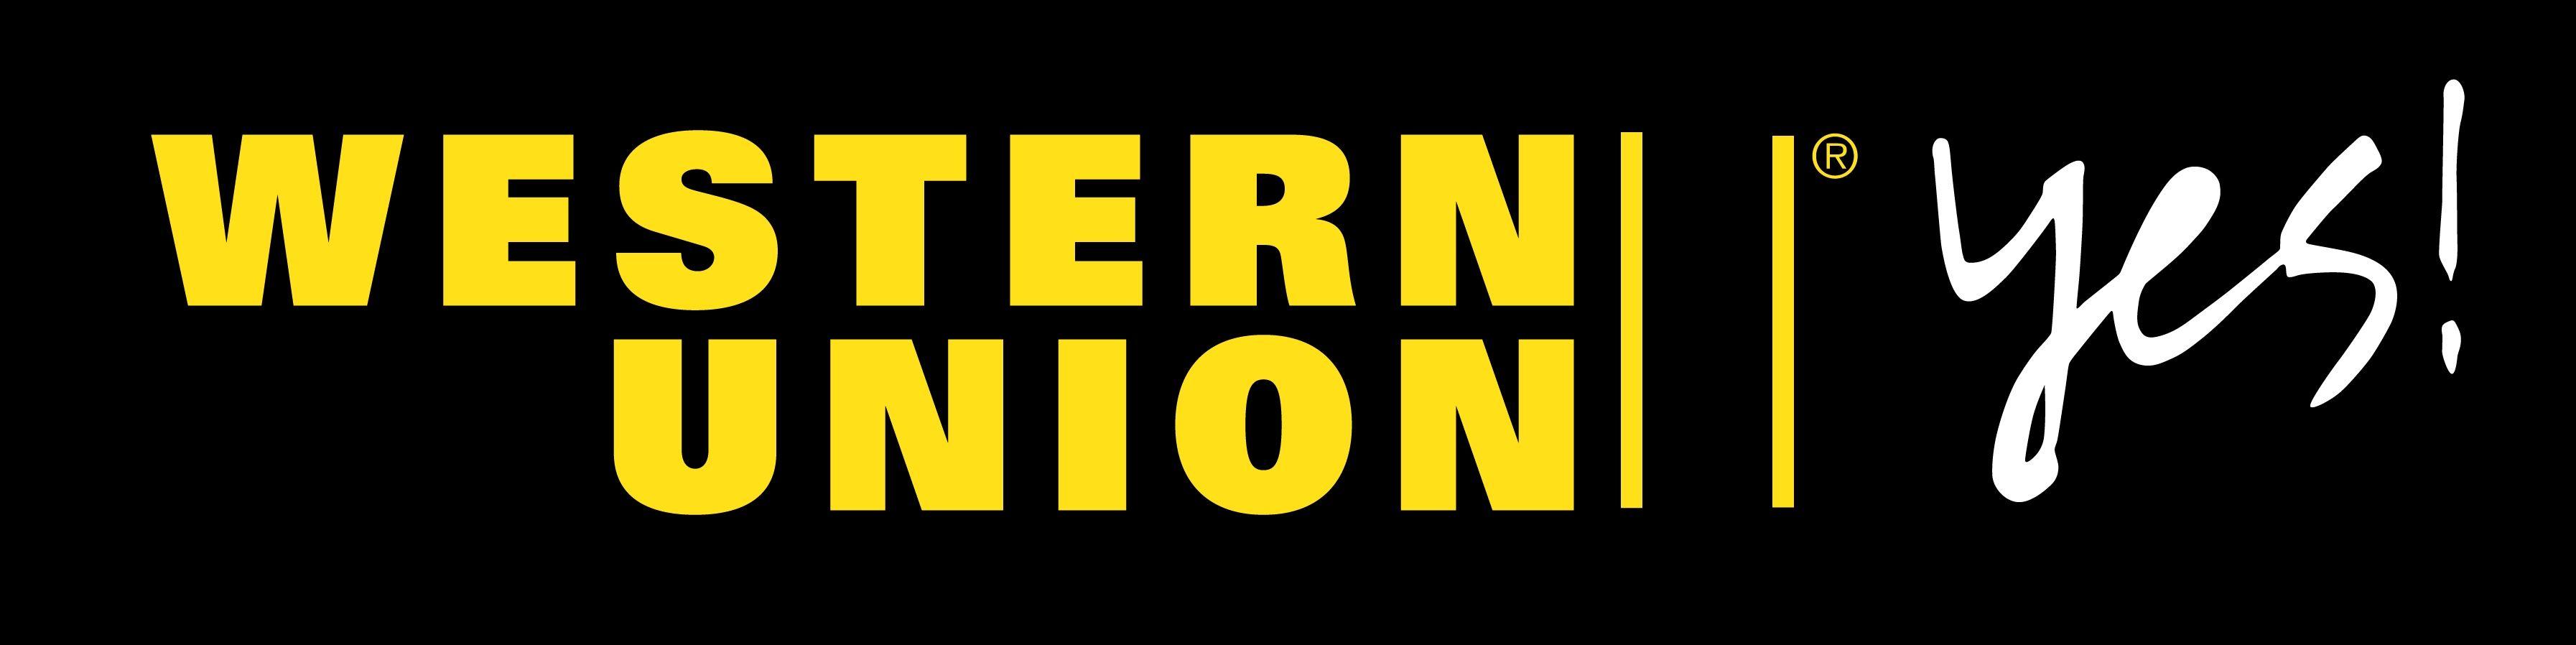 Union Yes Logo - Western union Logos